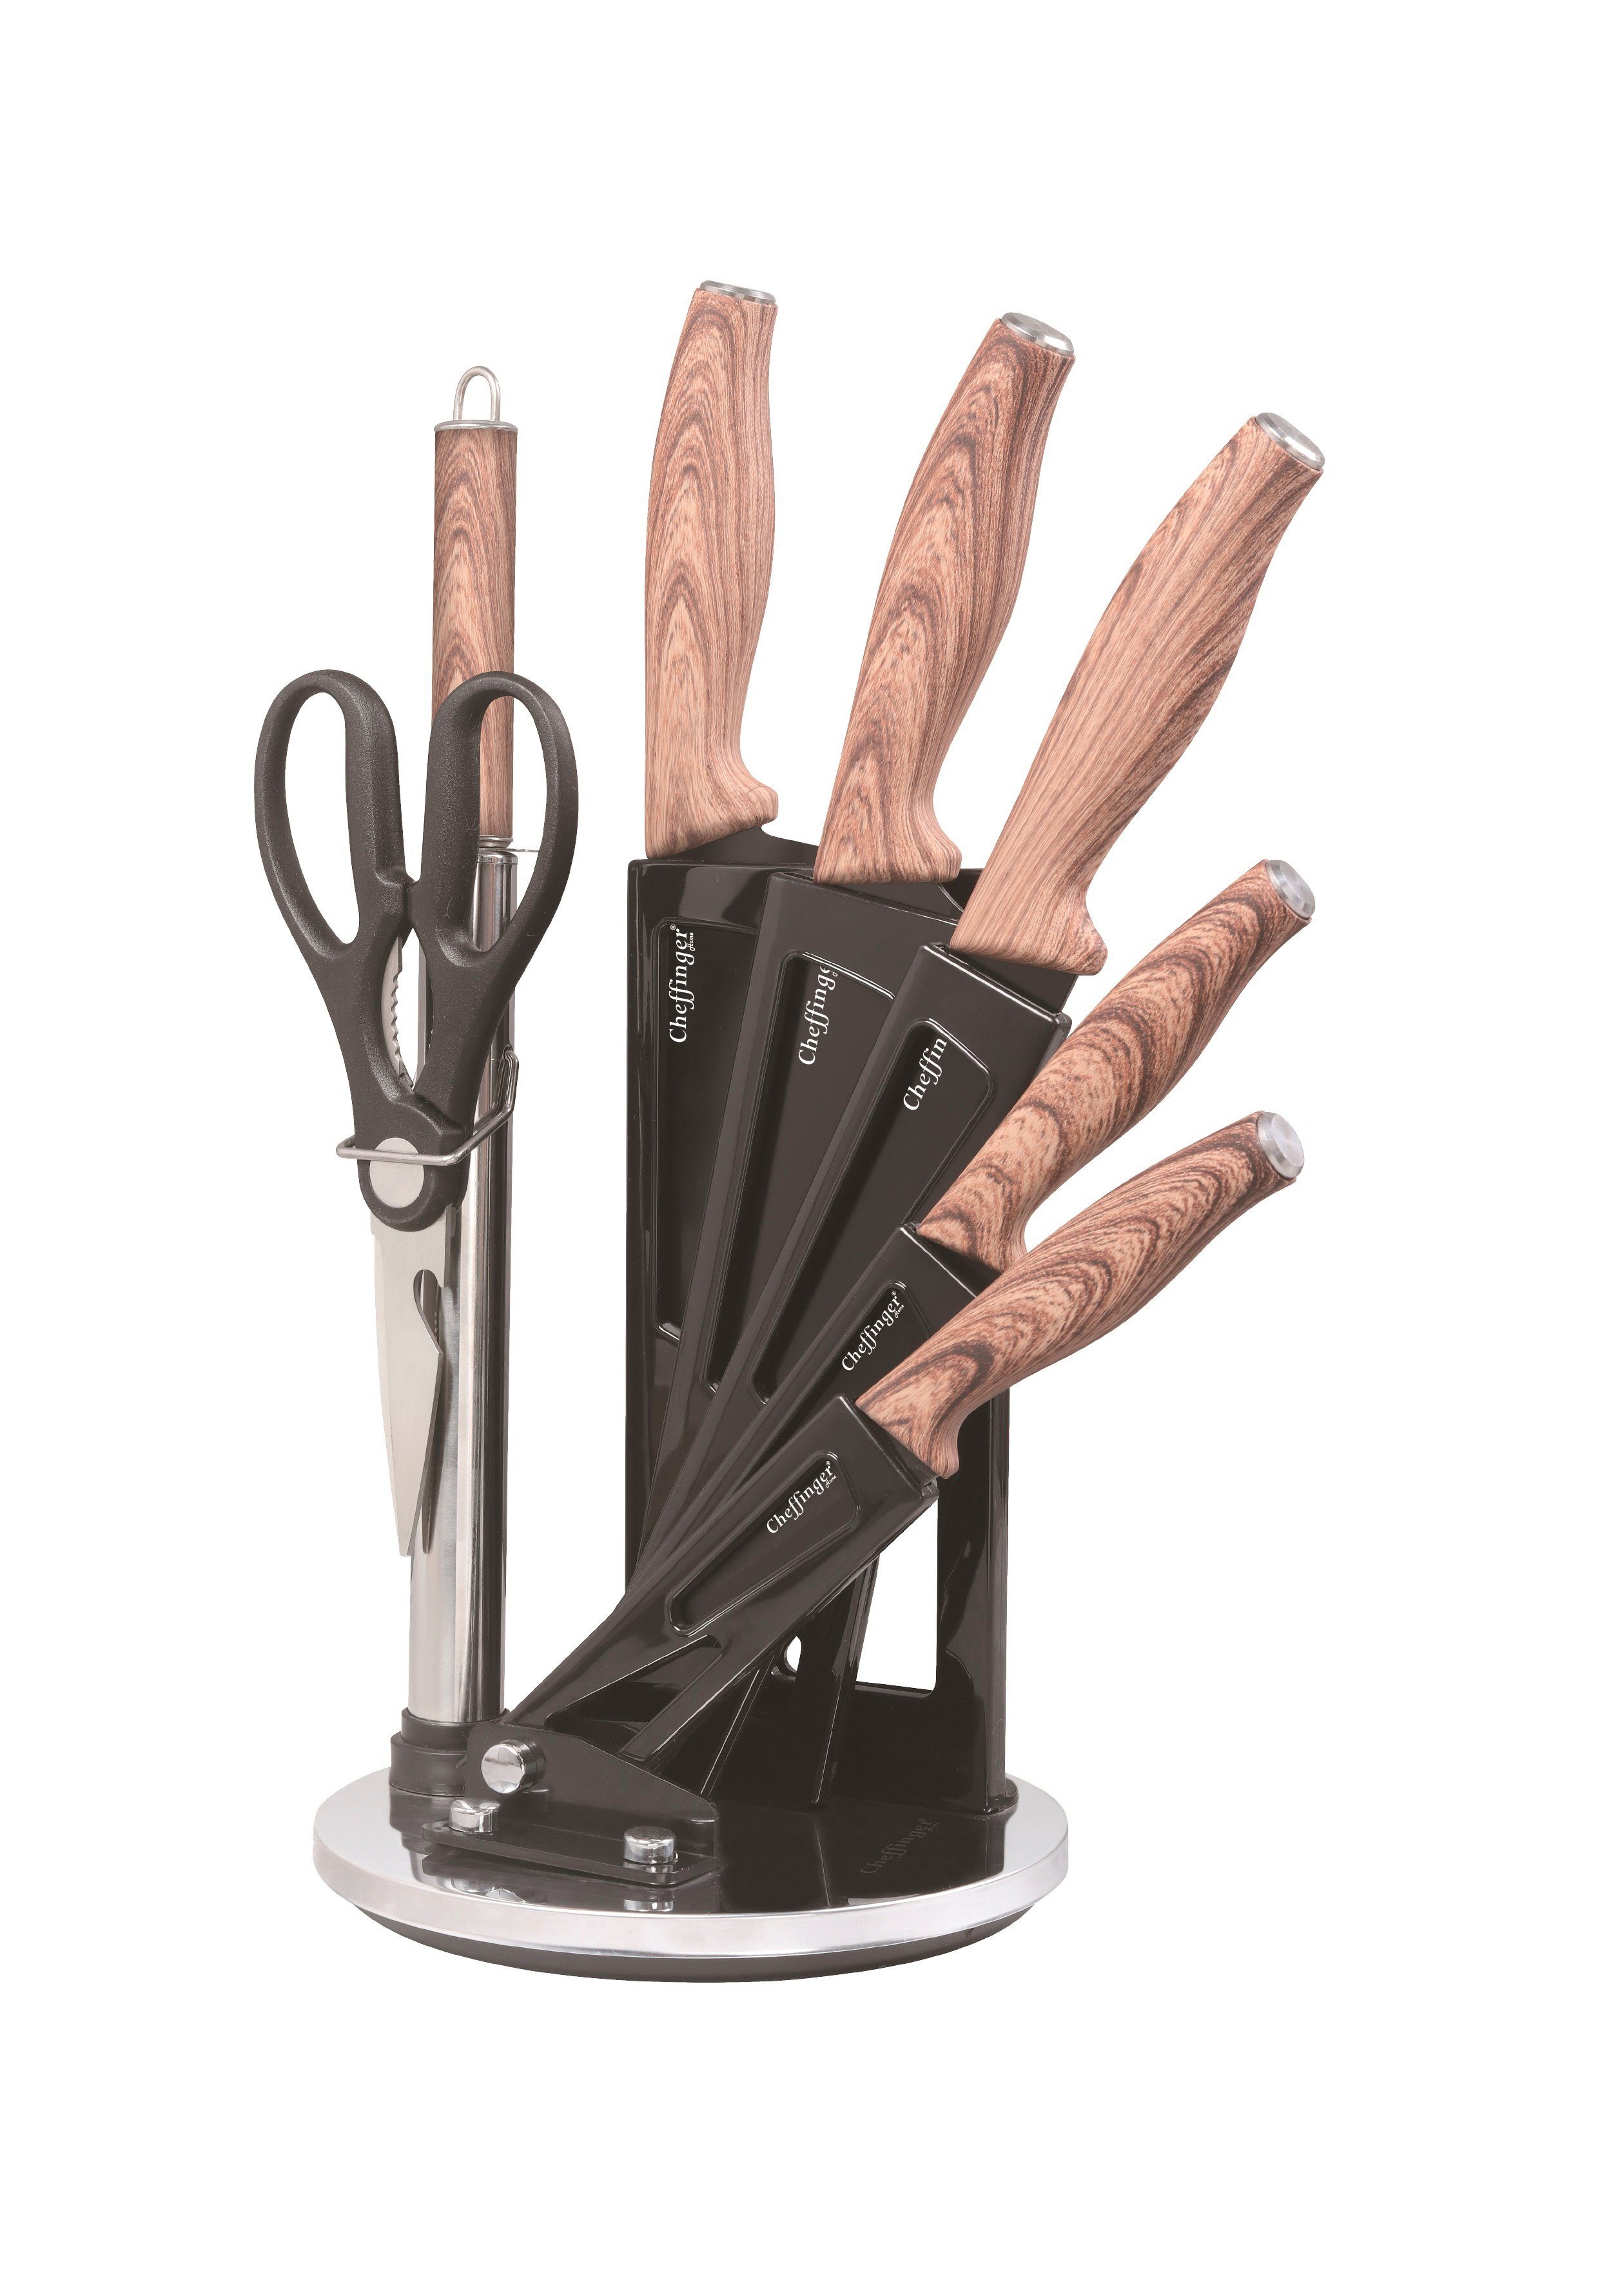 Messerständer Messerblock tlg. Kochmesser Messer-Set Messer (8-tlg) drehbar Messerset Cheffinger 8